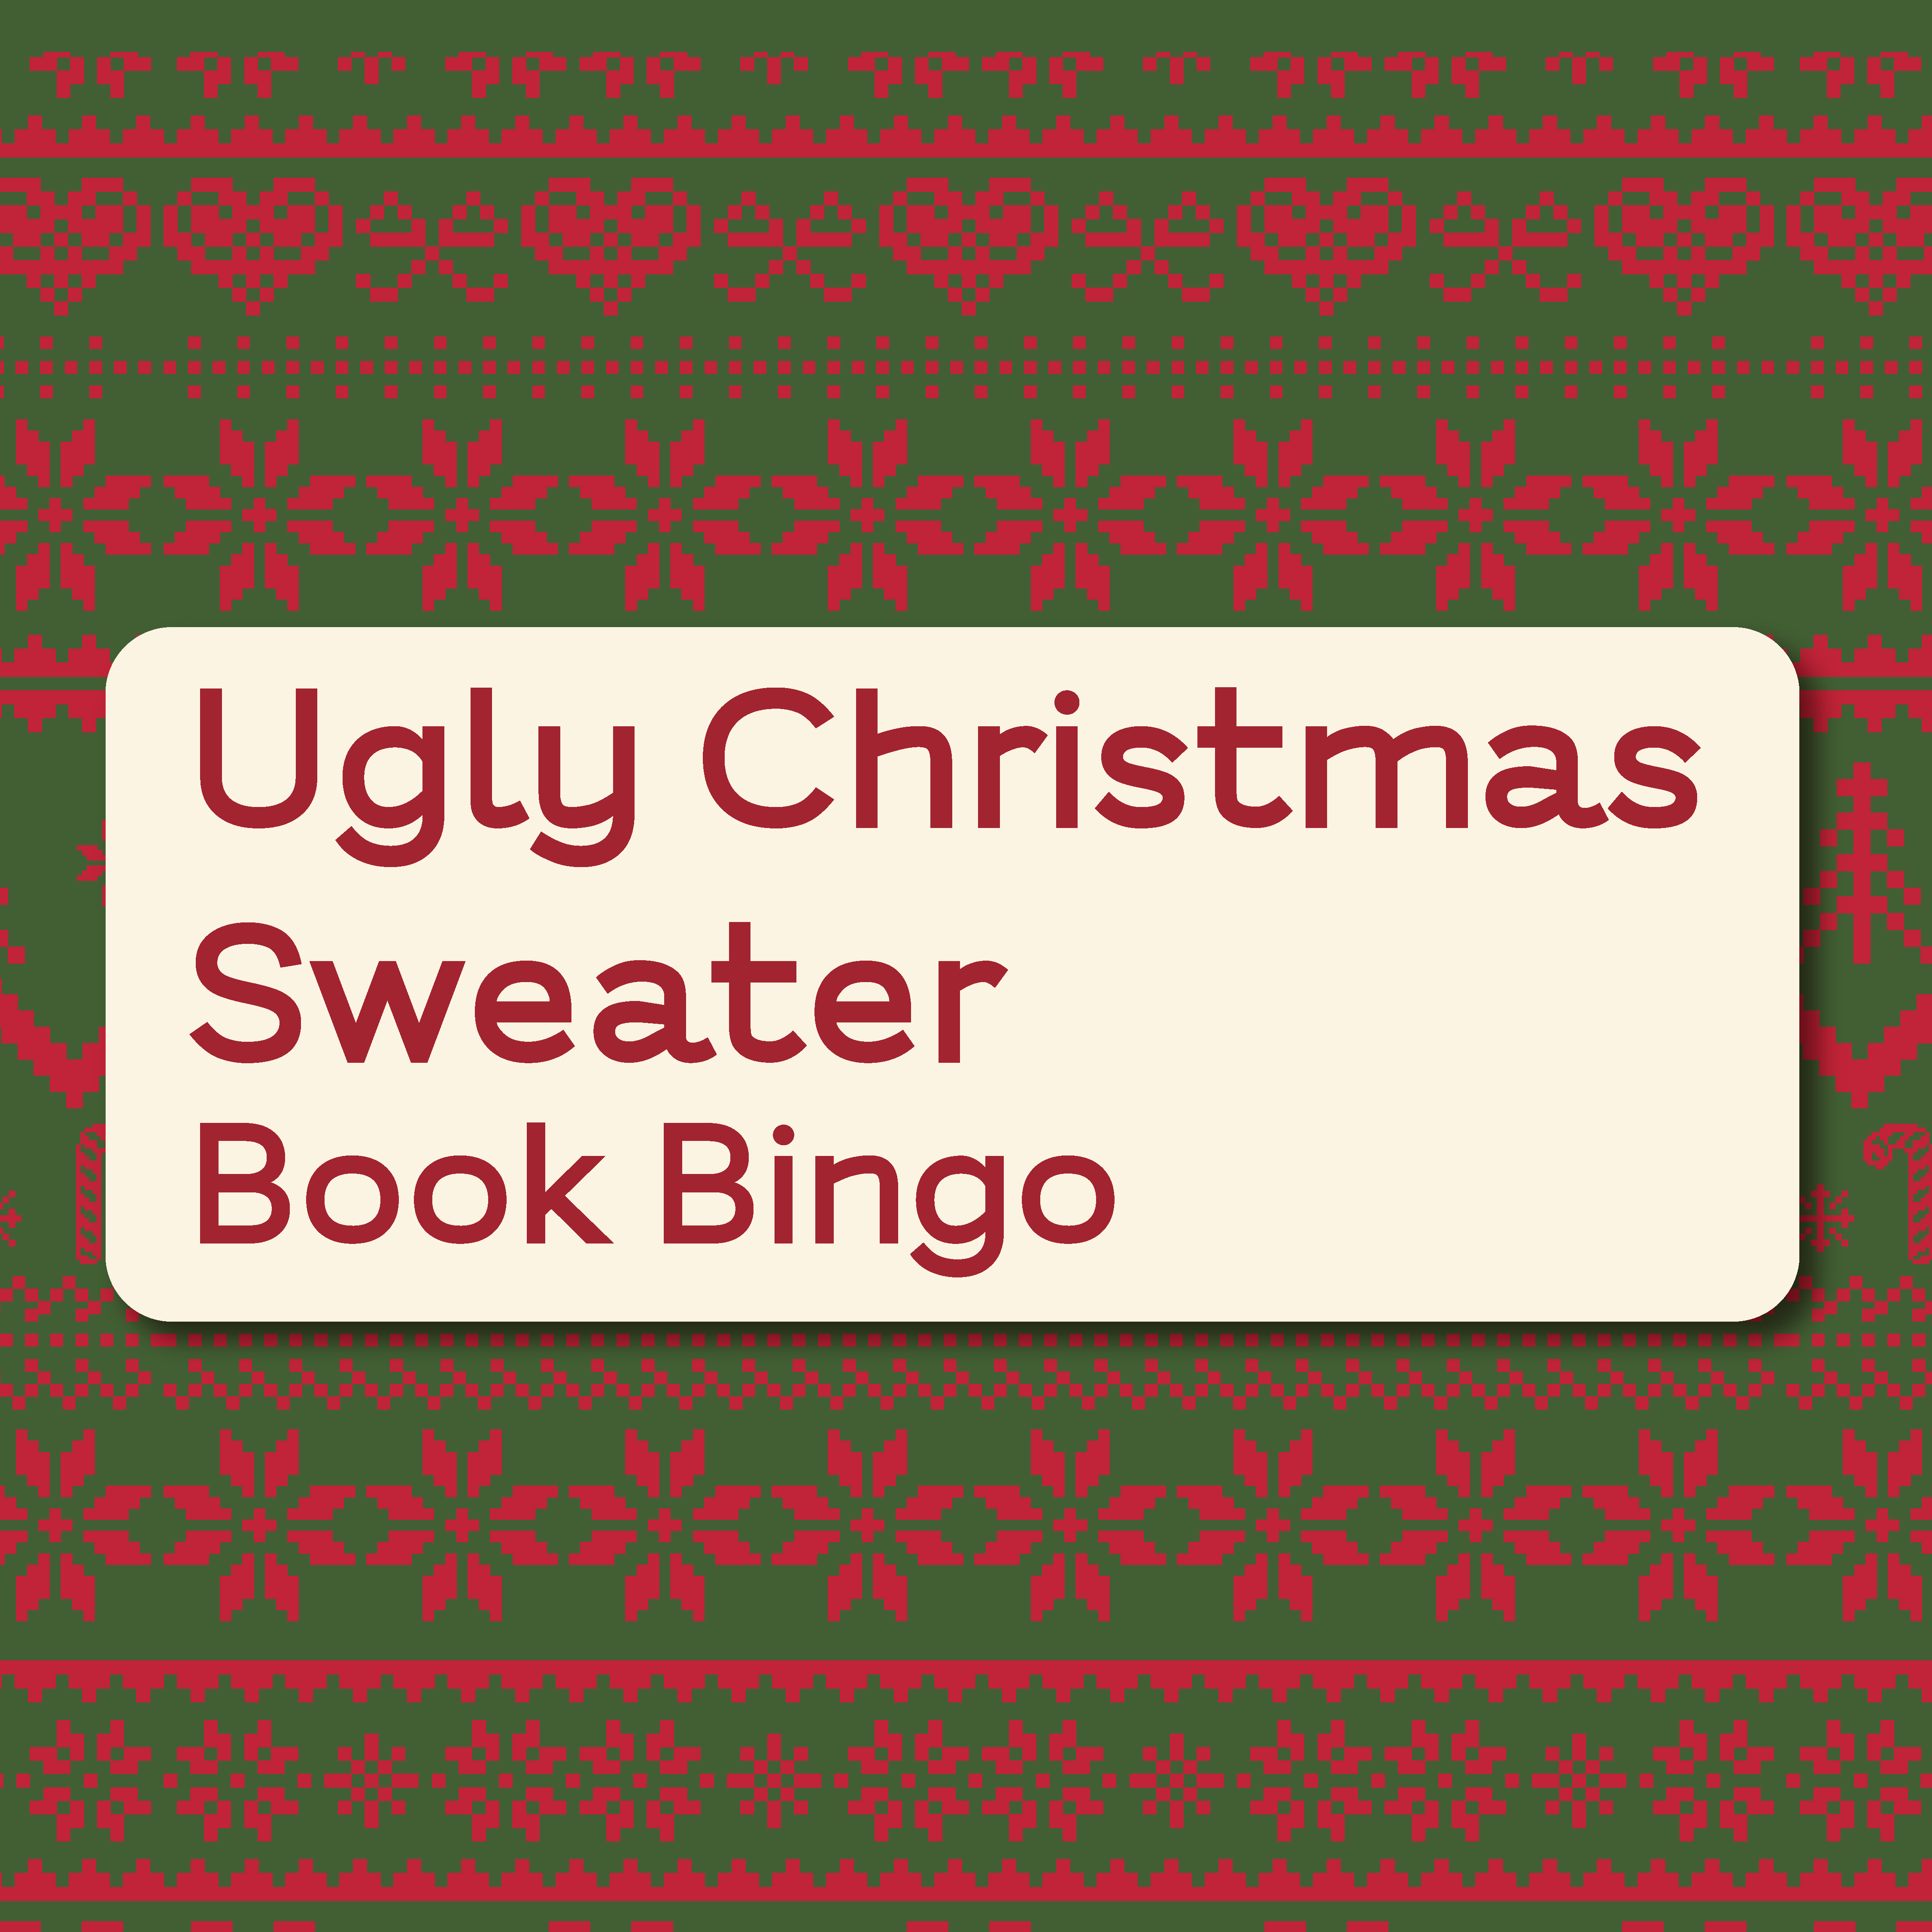 Ugly Christmas Sweater Book Bingo